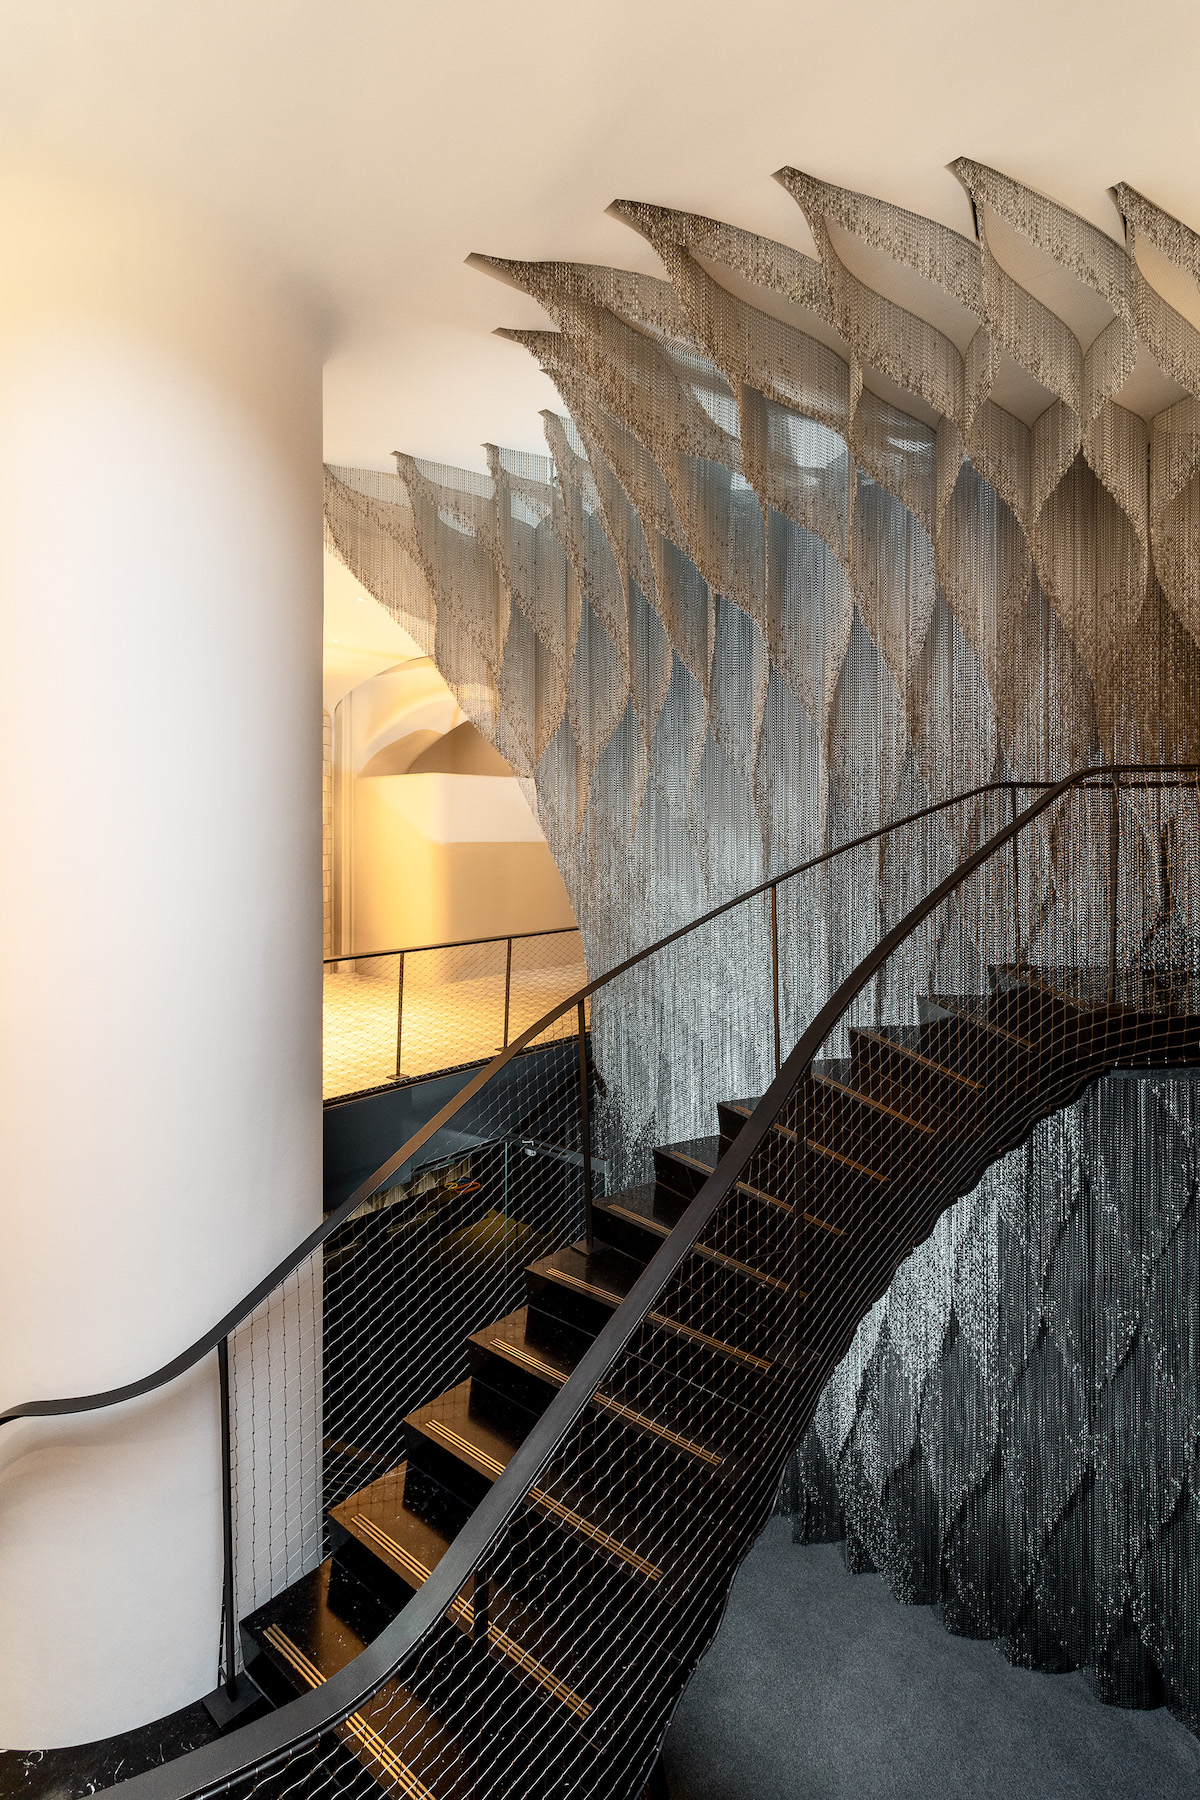 vista hacia abajo de la escalera de cadenas diseñada pr Kengo Kuma para la Casa Batlló de antoni gaudi